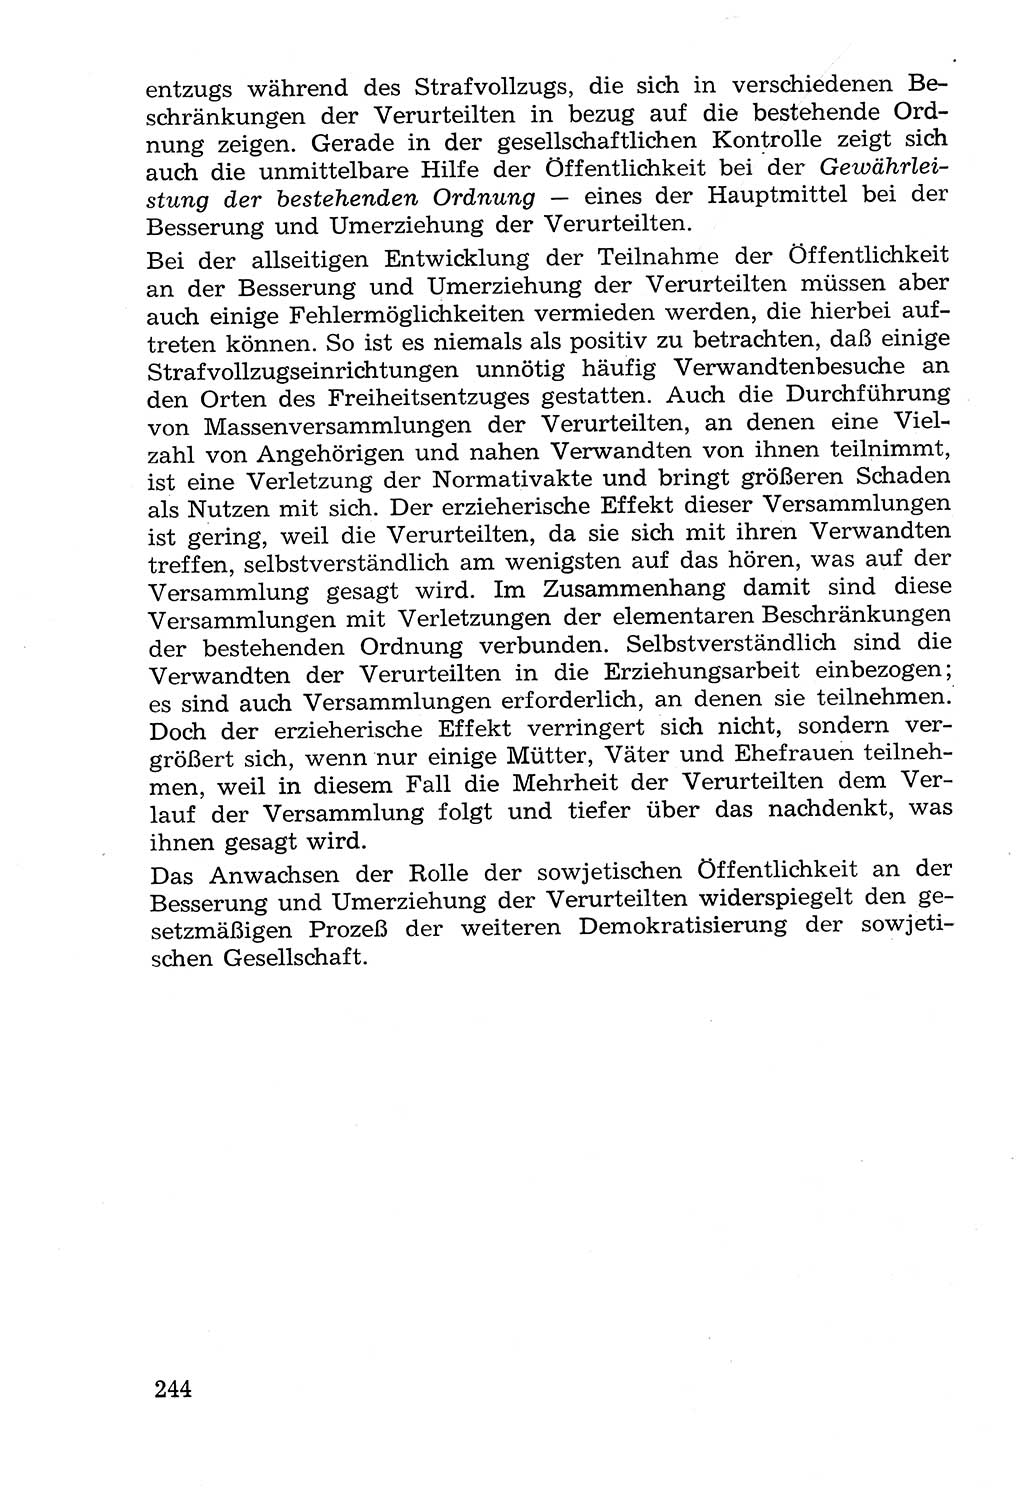 Lehrbuch der Strafvollzugspädagogik [Deutsche Demokratische Republik (DDR)] 1969, Seite 244 (Lb. SV-Pd. DDR 1969, S. 244)